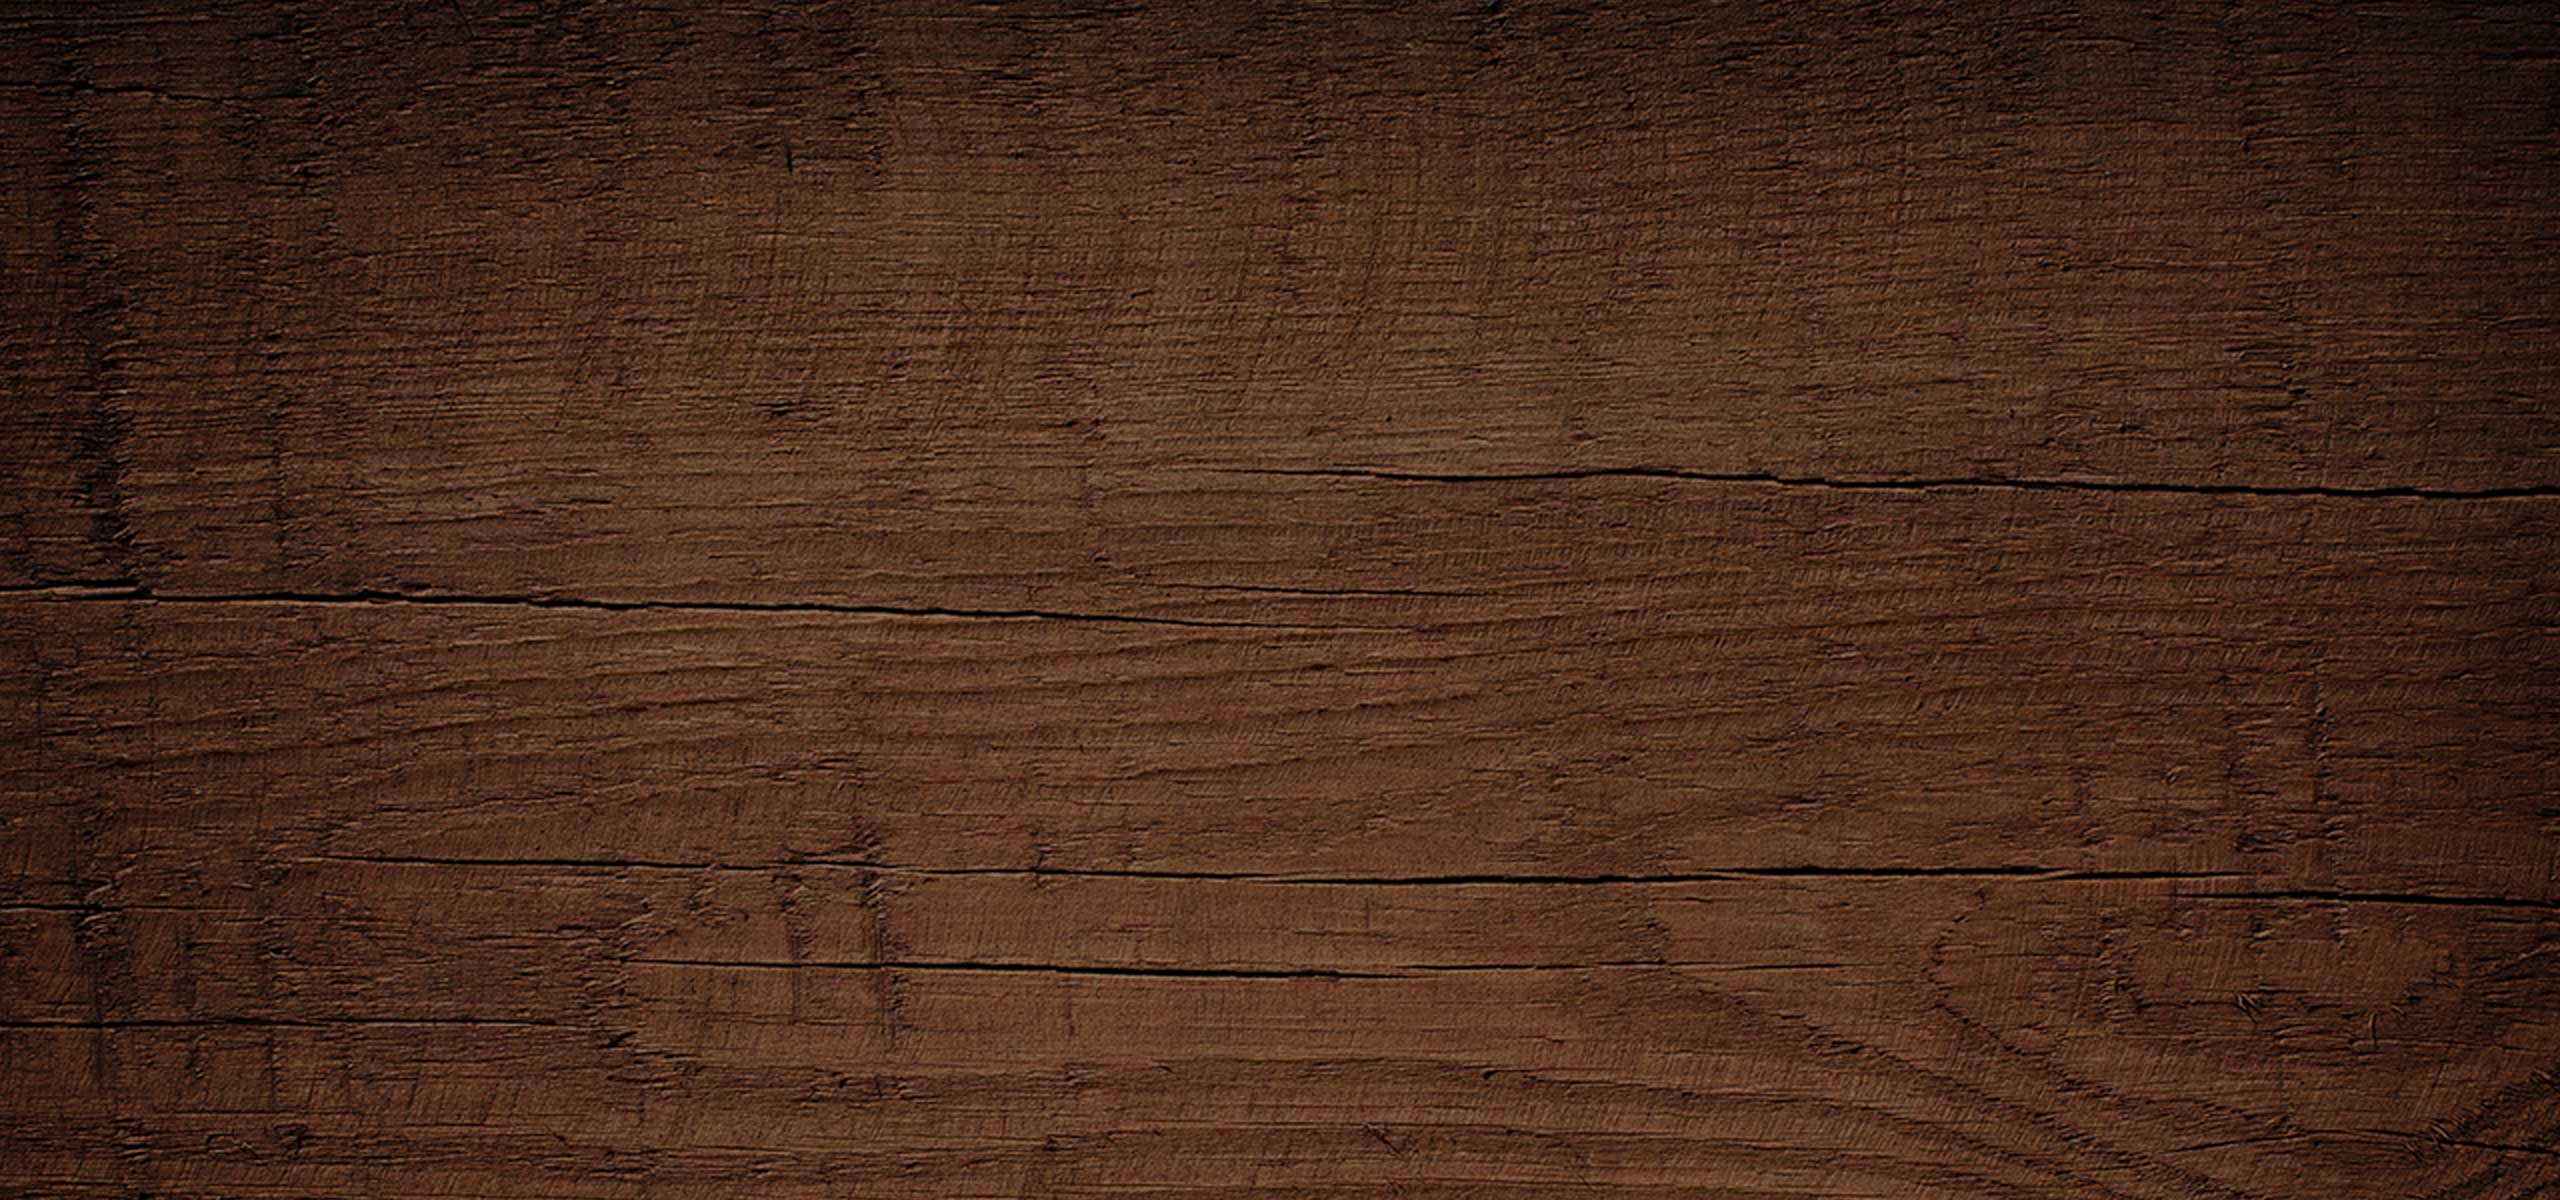 Background gỗ nâu tối